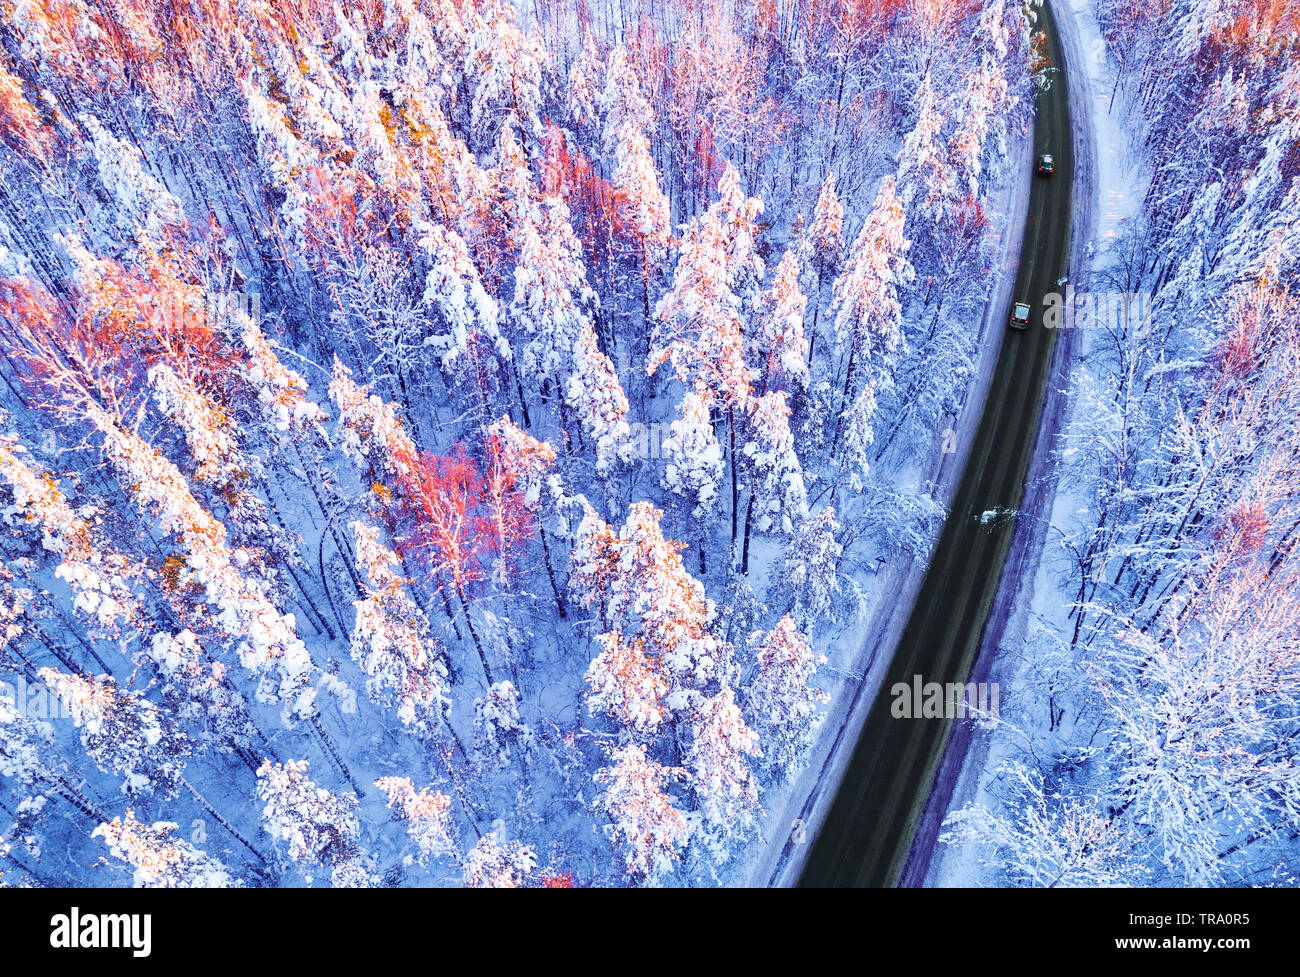 Vista aérea de un automóvil en la carretera de invierno en el bosque. Paisaje invernal paisaje. La fotografía aérea de bosque nevado con un coche en la carretera. Capturado f Foto de stock